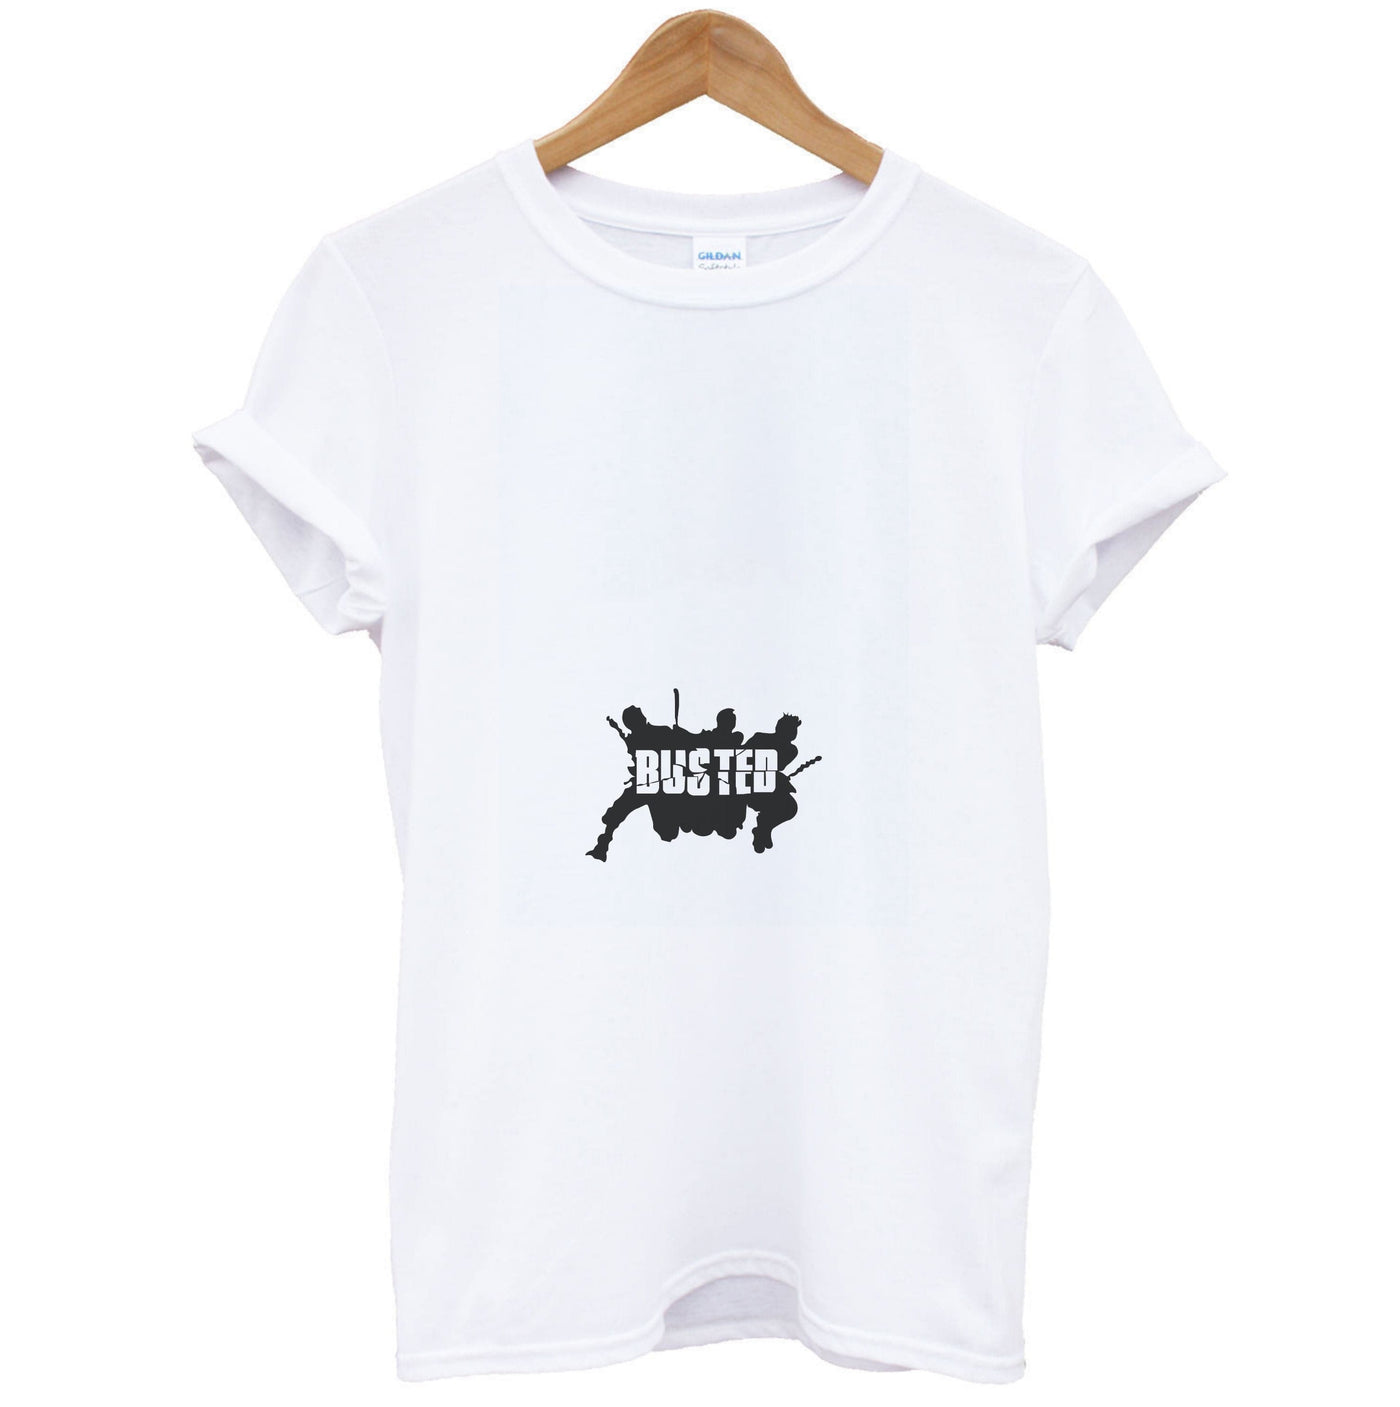 Splatter Text - Busted T-Shirt